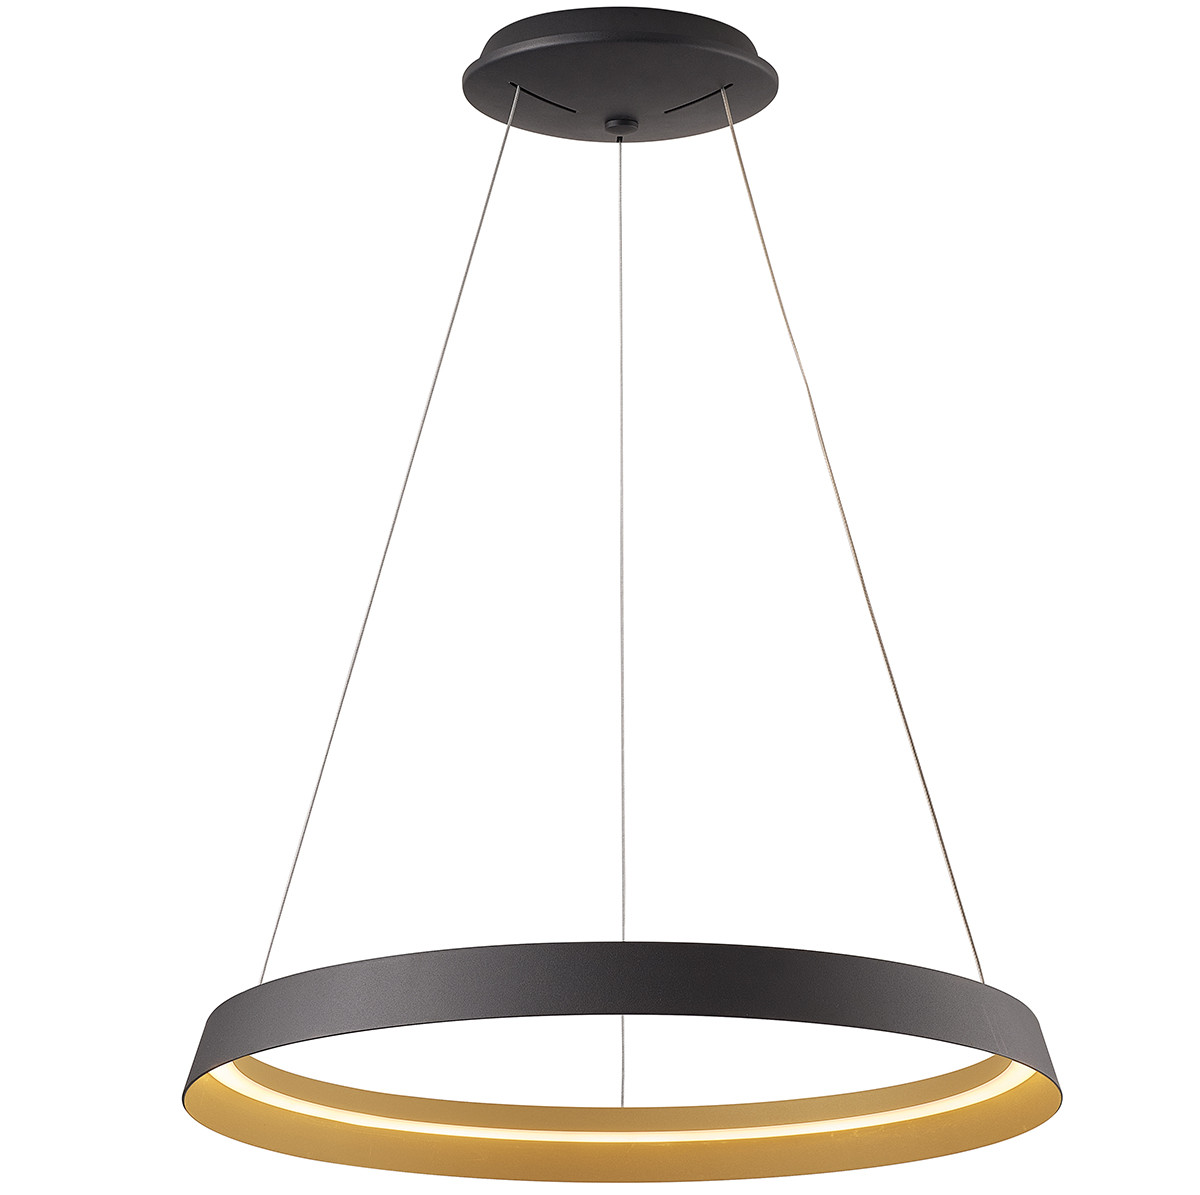 zwarte-ring-hanglamp-met-led-verlichting-hanglamp-steinhauer-ringlux-goud-en-zwart-3692zw